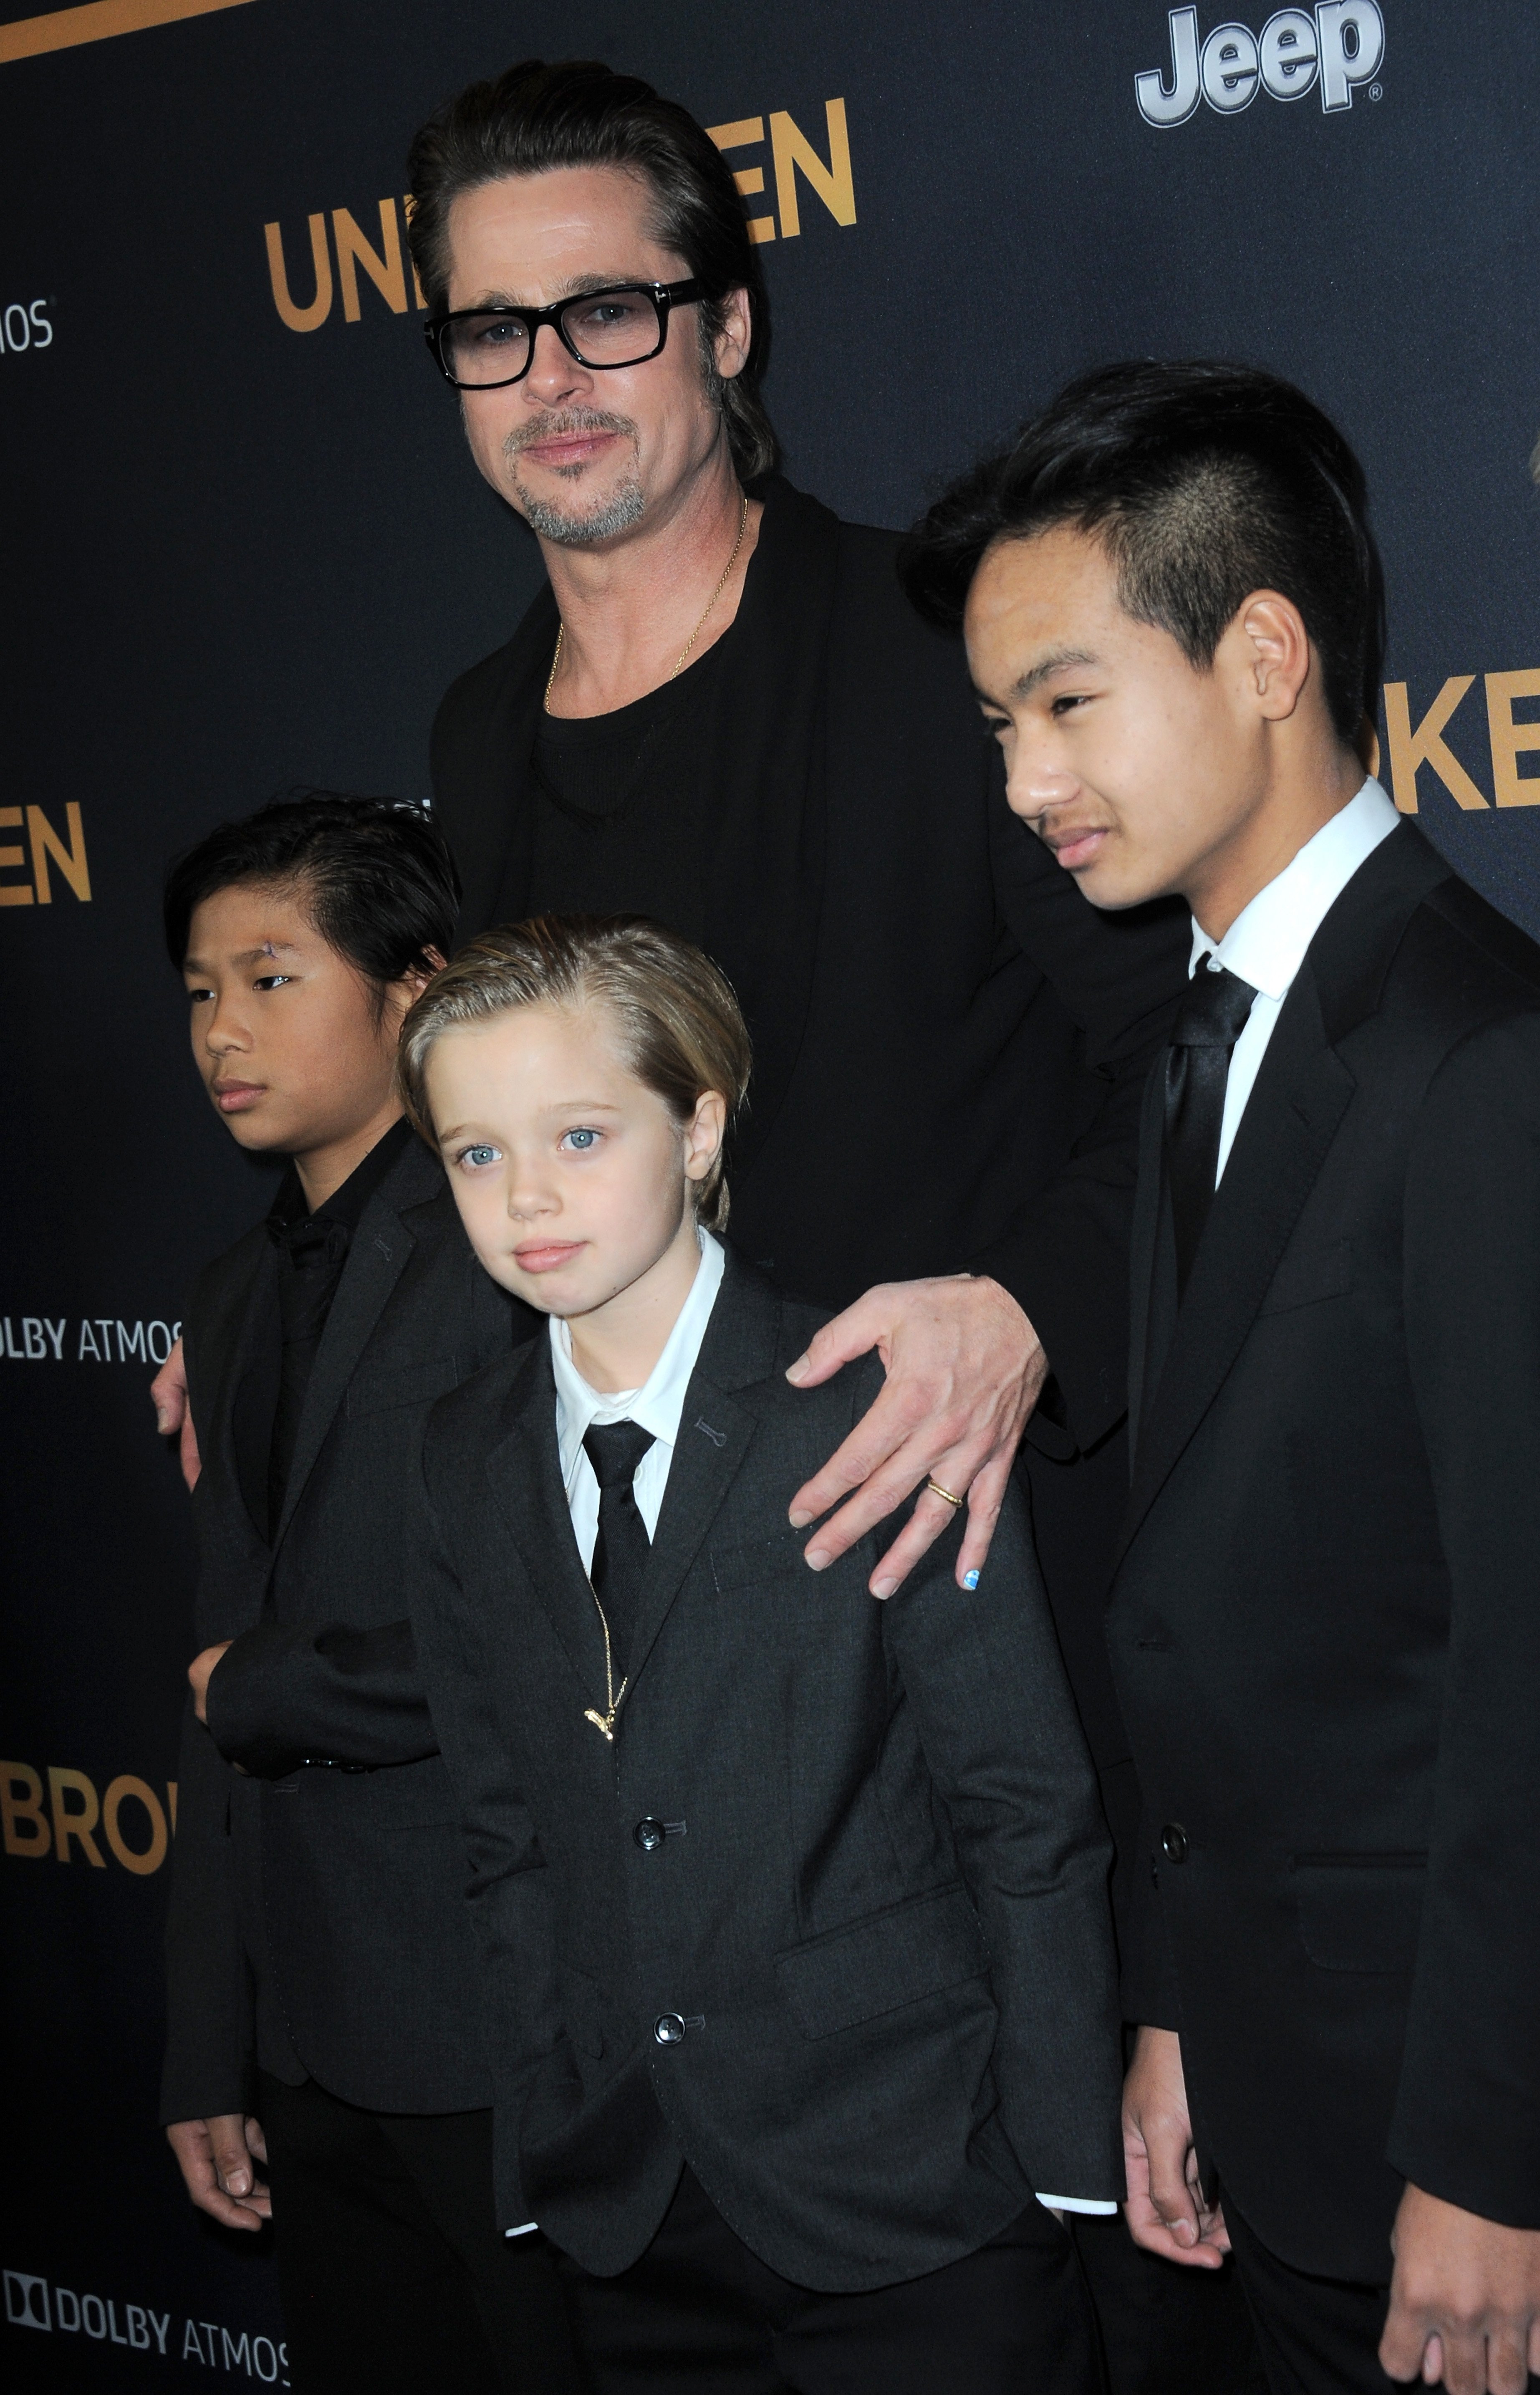 Brad Pitt, Pax, Shiloh y Maddox Jolie-Pitt en el estreno de "Unbroken", el 15 de diciembre de 2014, en Hollywood, California. | Foto: Getty Images